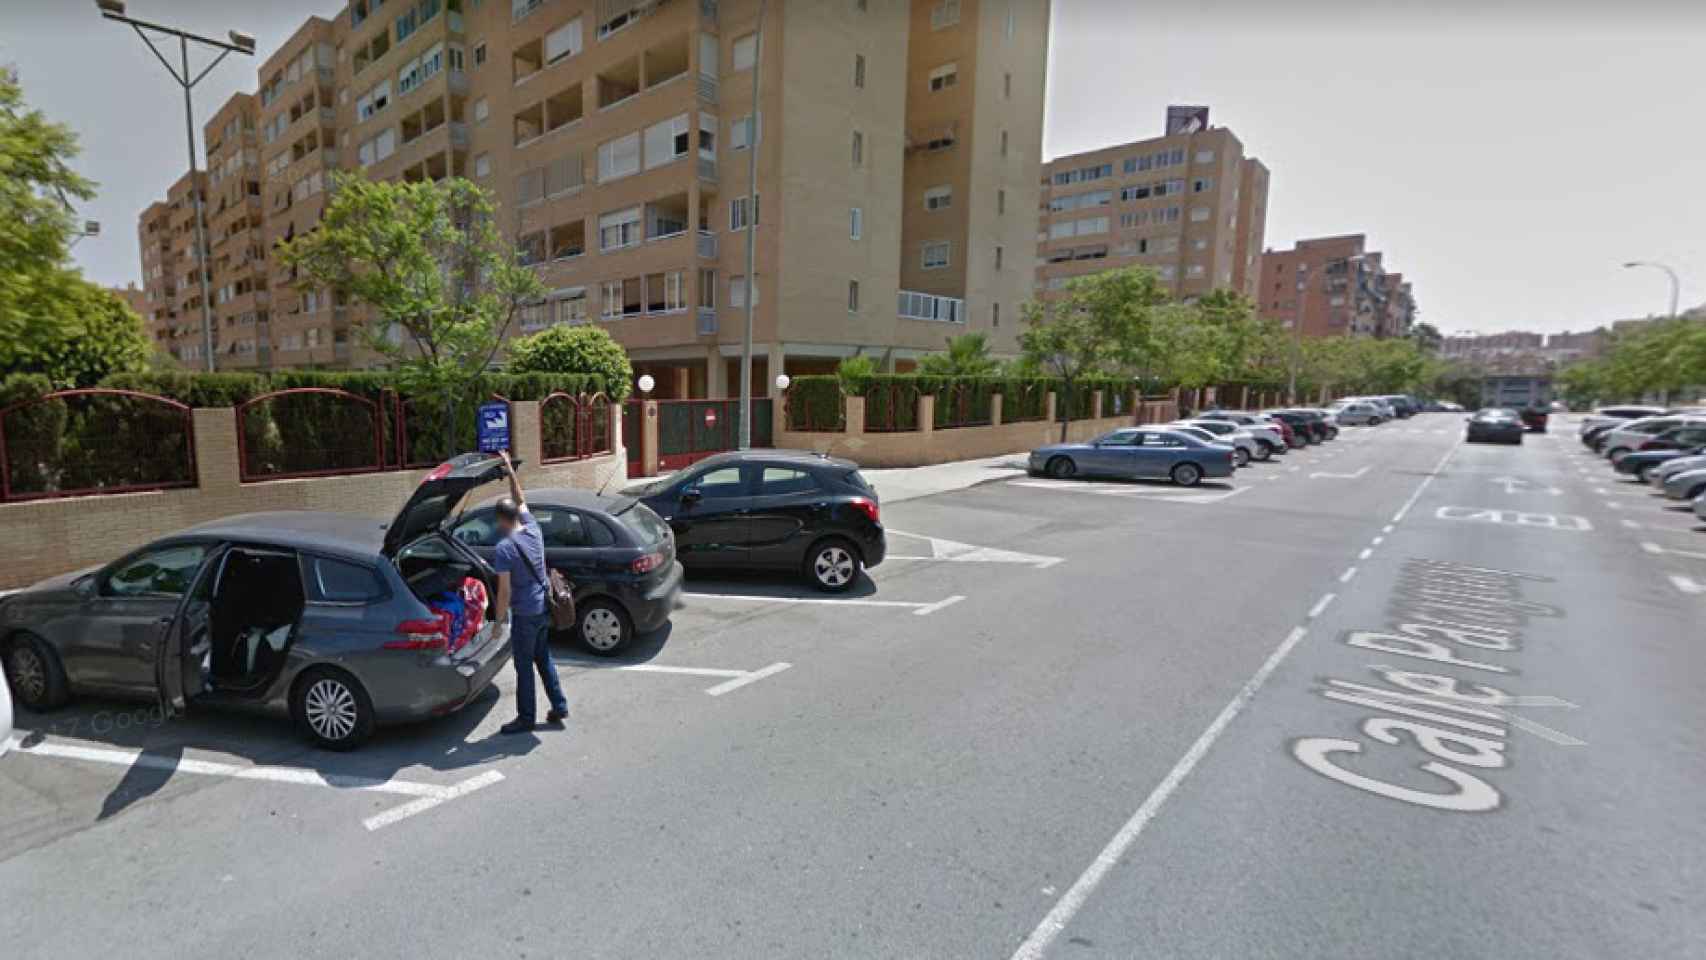 Calle Paraguay de Alicante, en la que se ha encontrado el coche con el cadáver en su interior.